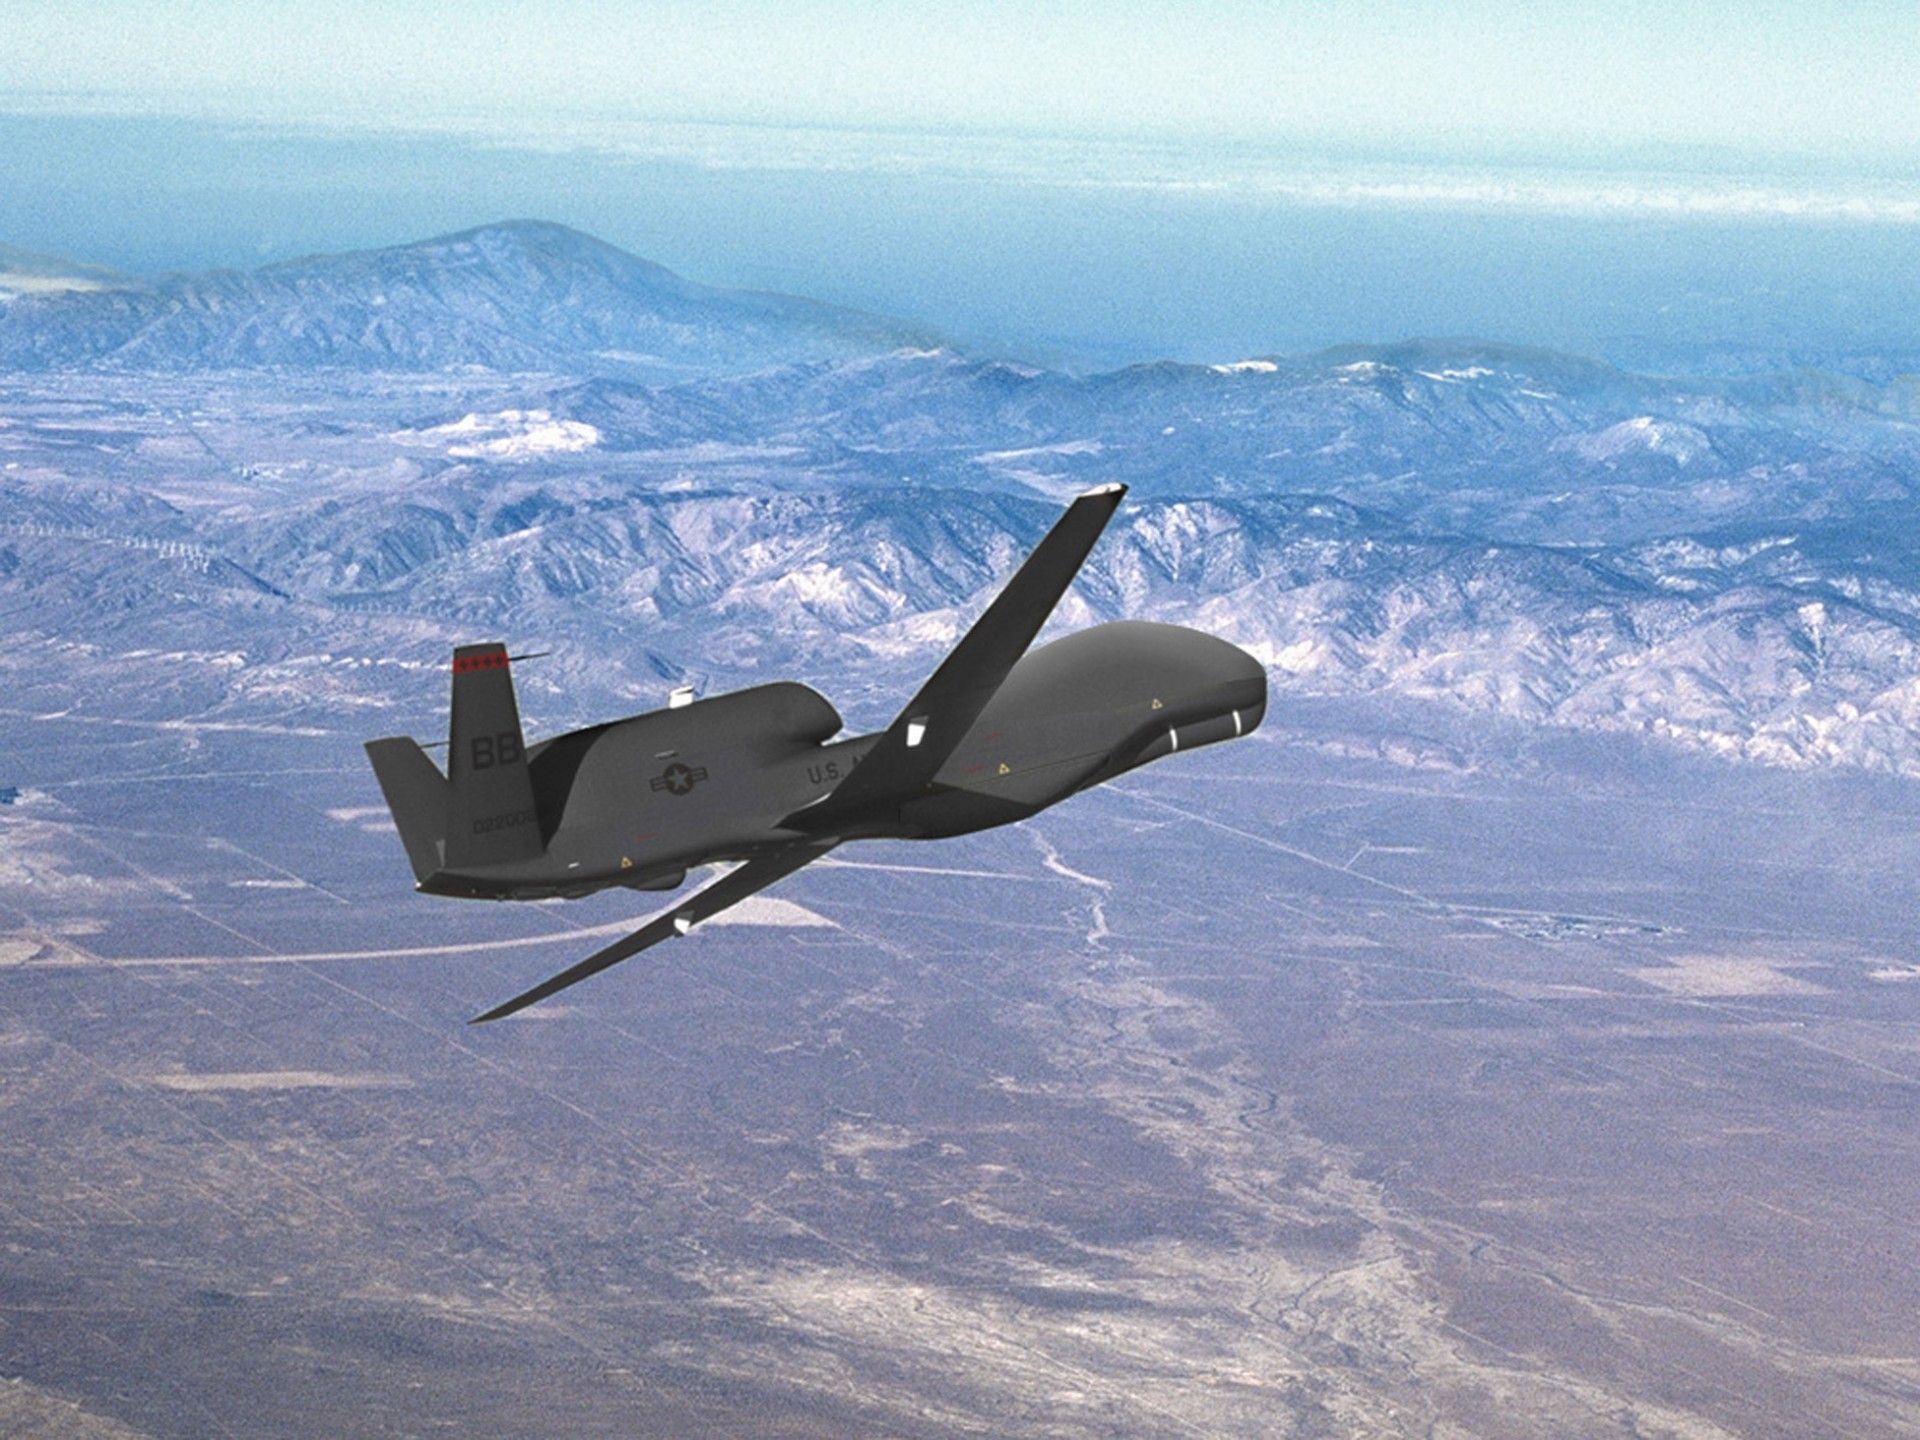 Koszty wykorzystania dronów RQ-4 Global Hawk spadły w ciągu ostatnich trzech lat o ponad połowę – fot. Northrop Grumman